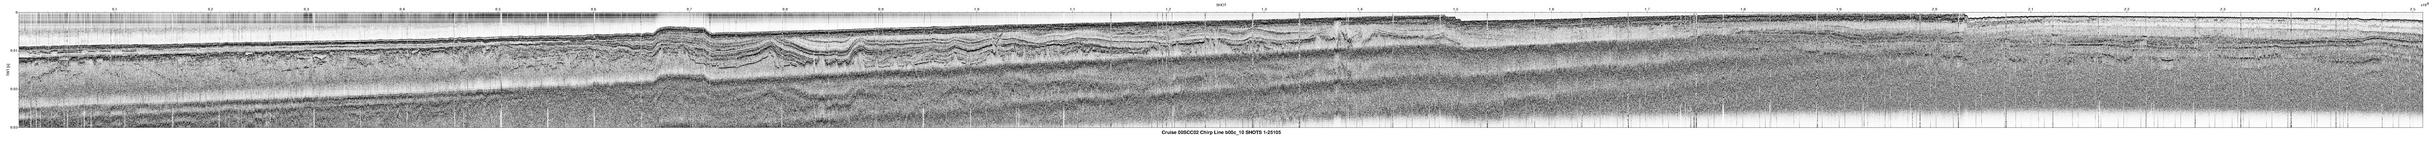 00SCC02 b00c_10 seismic profile image